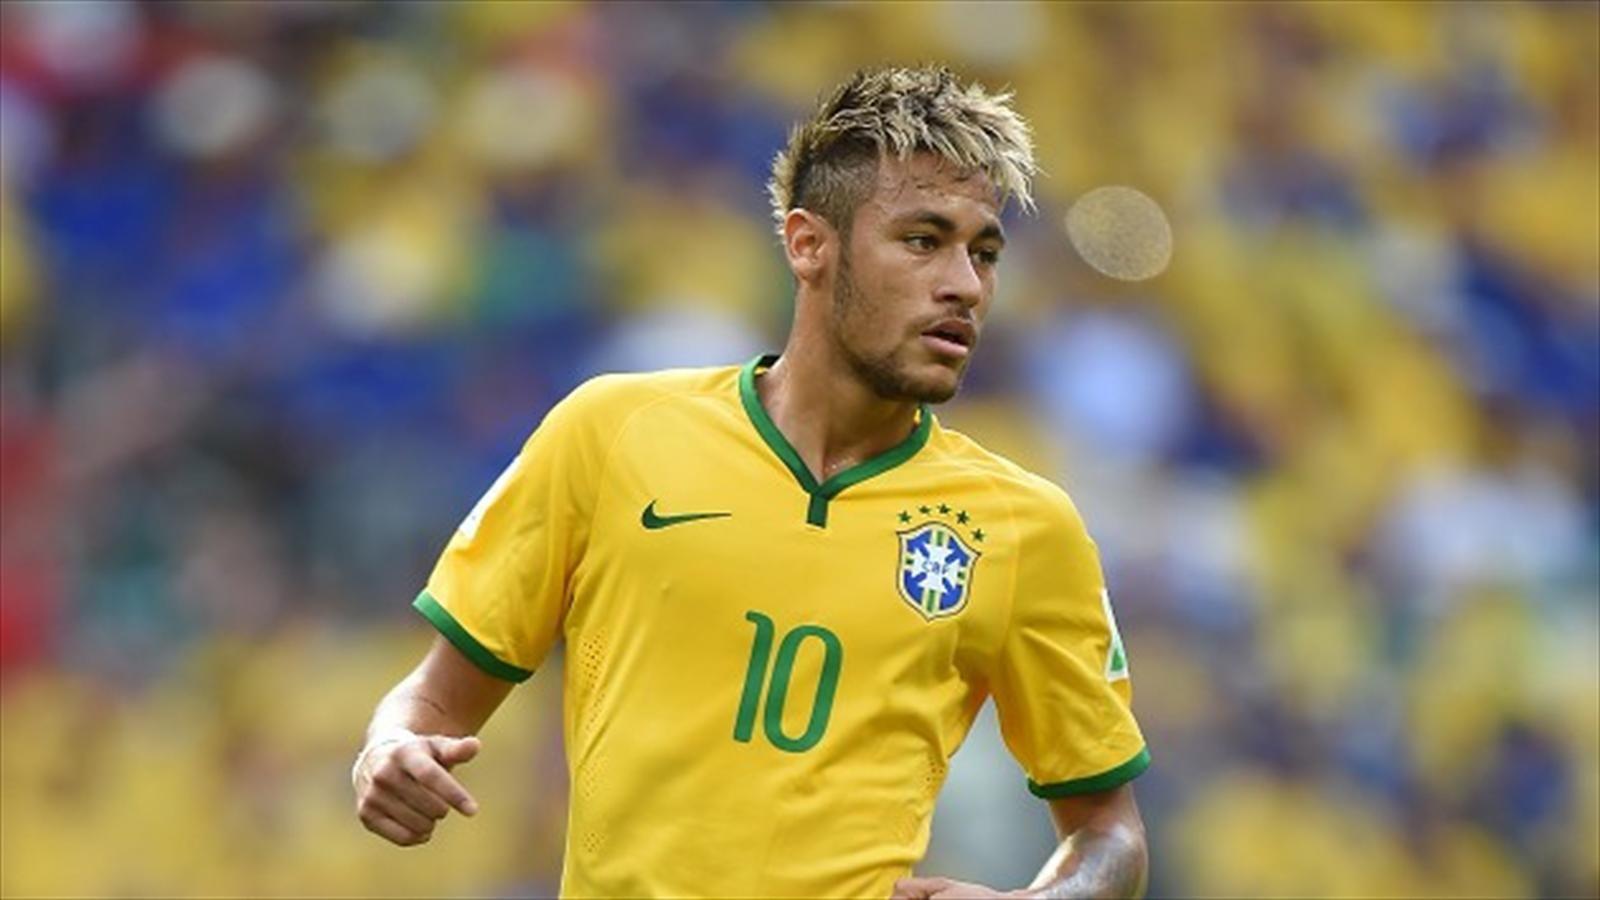 Neymar Brazil Wallpapers - Top Free Neymar Brazil Backgrounds -  WallpaperAccess